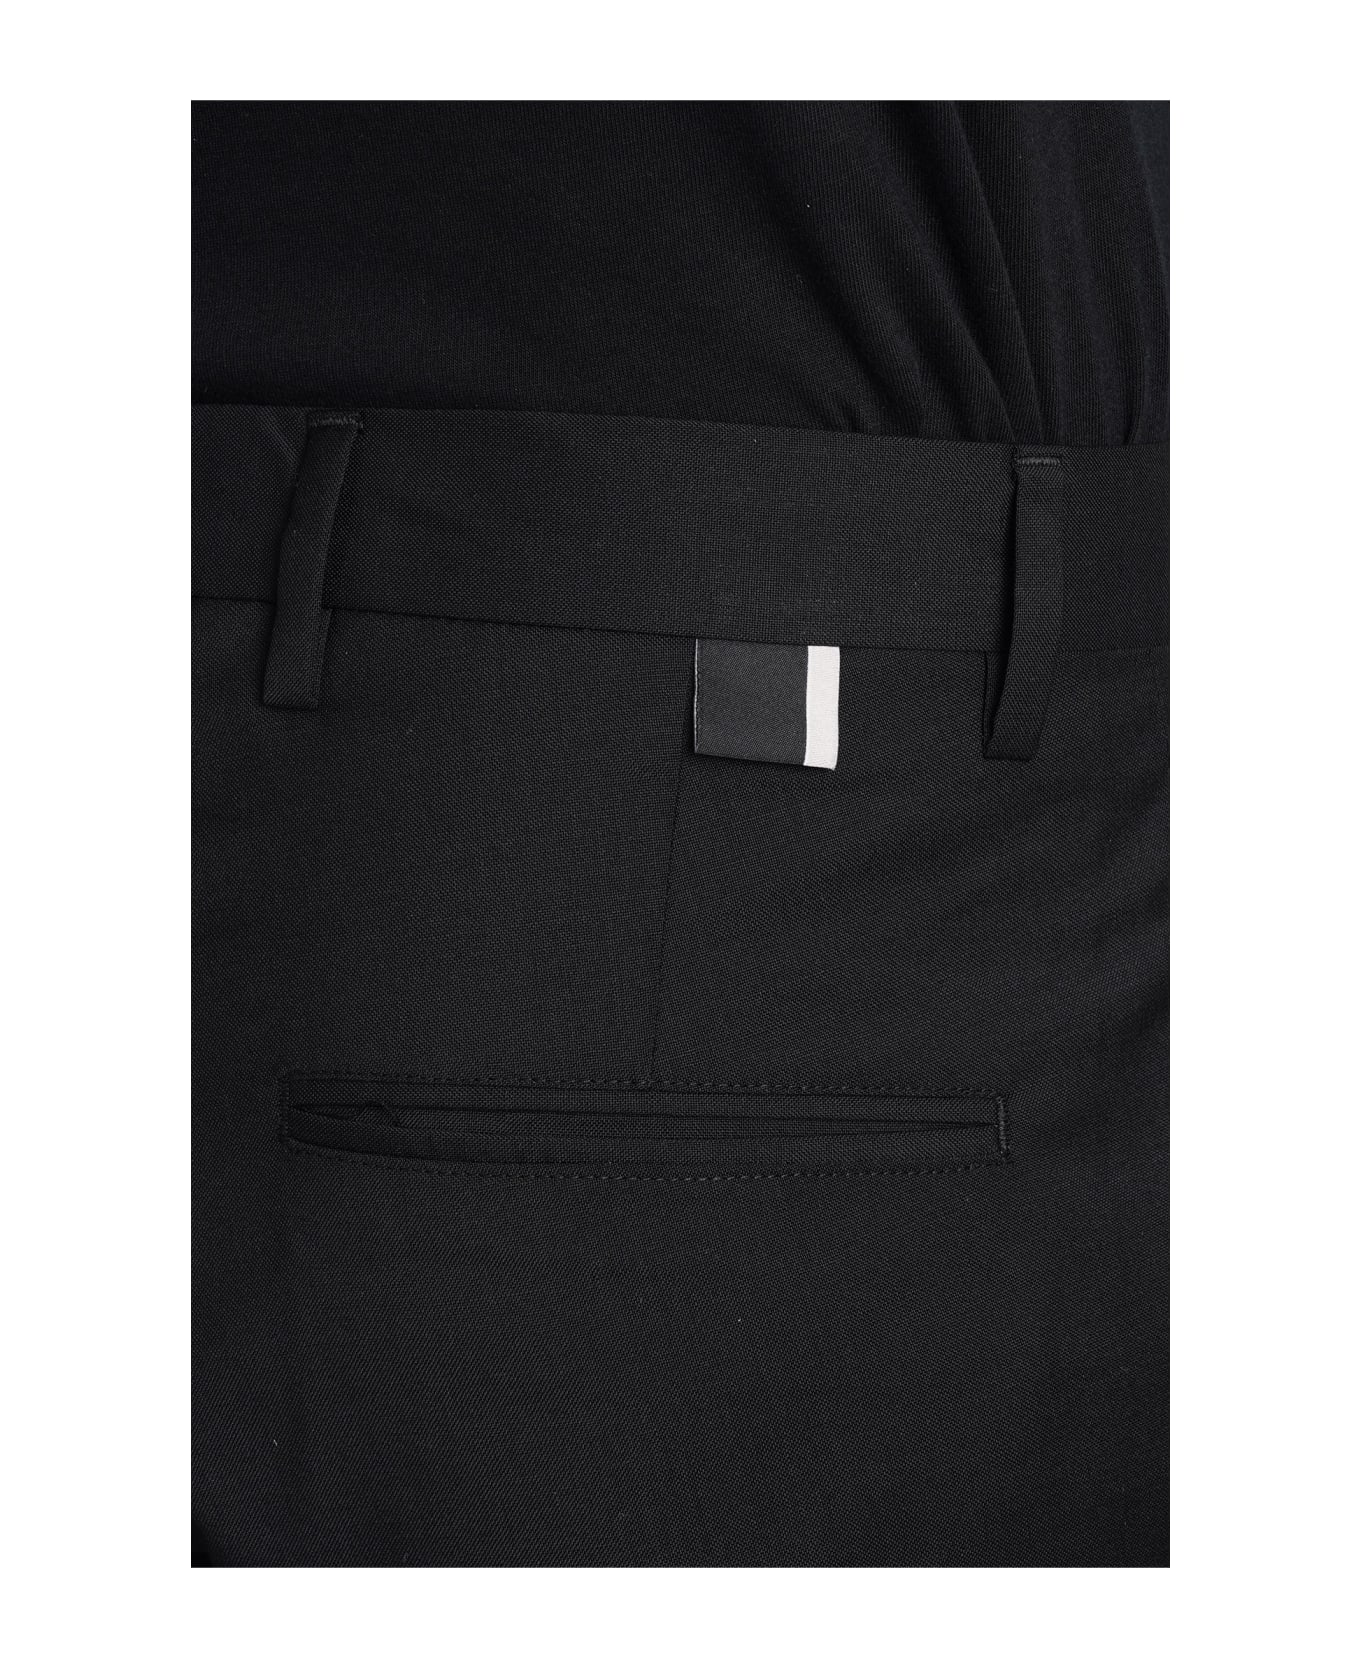 Low Brand Cooper T1.7 Tropical Pants In Black Wool - black